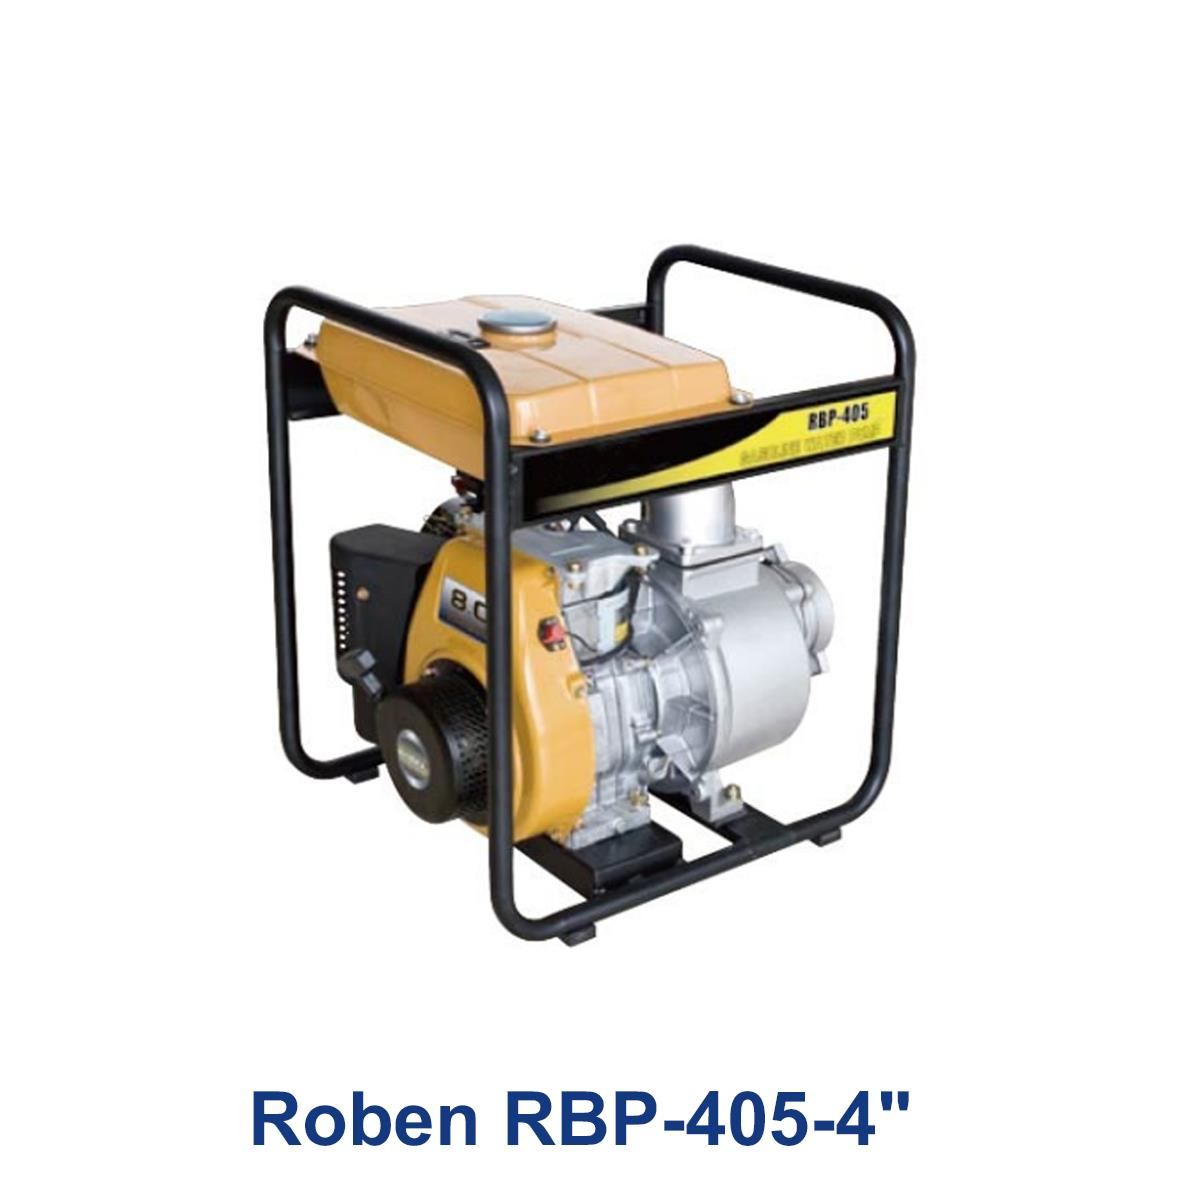 Roben-RBP-405-4